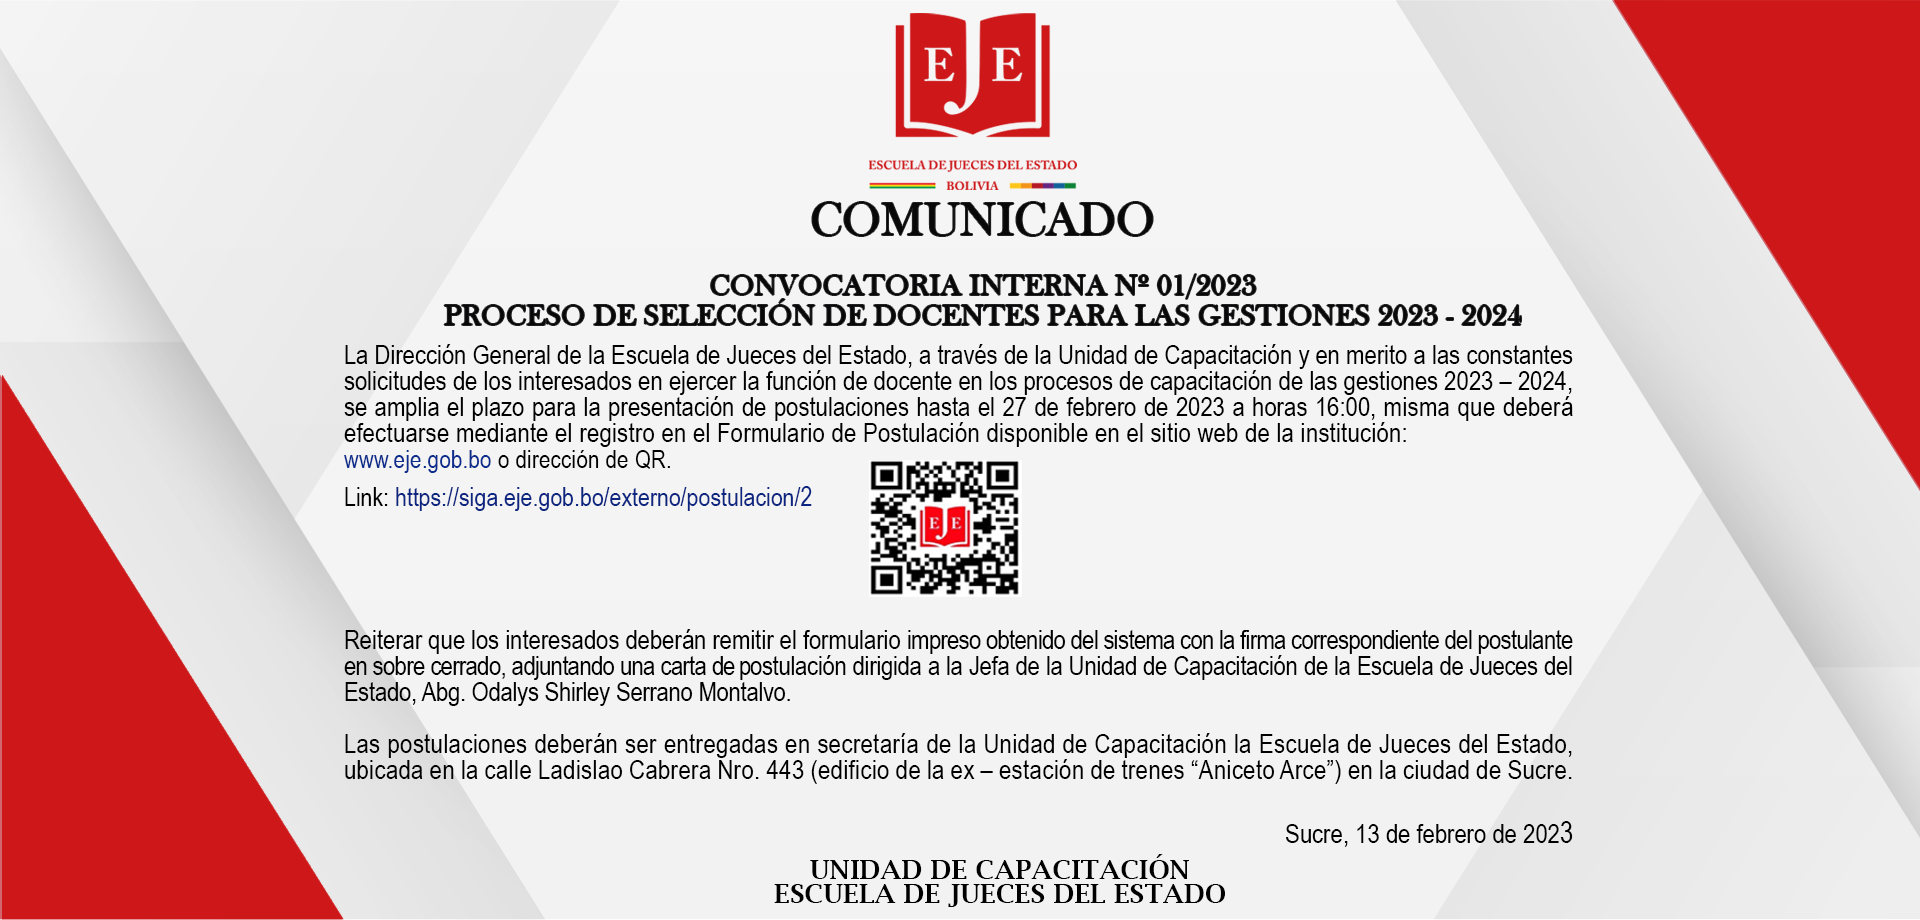 COMUNICADO CONVOCATORIA INTERNA Nº 01/2023 SELECCION DOCENTES